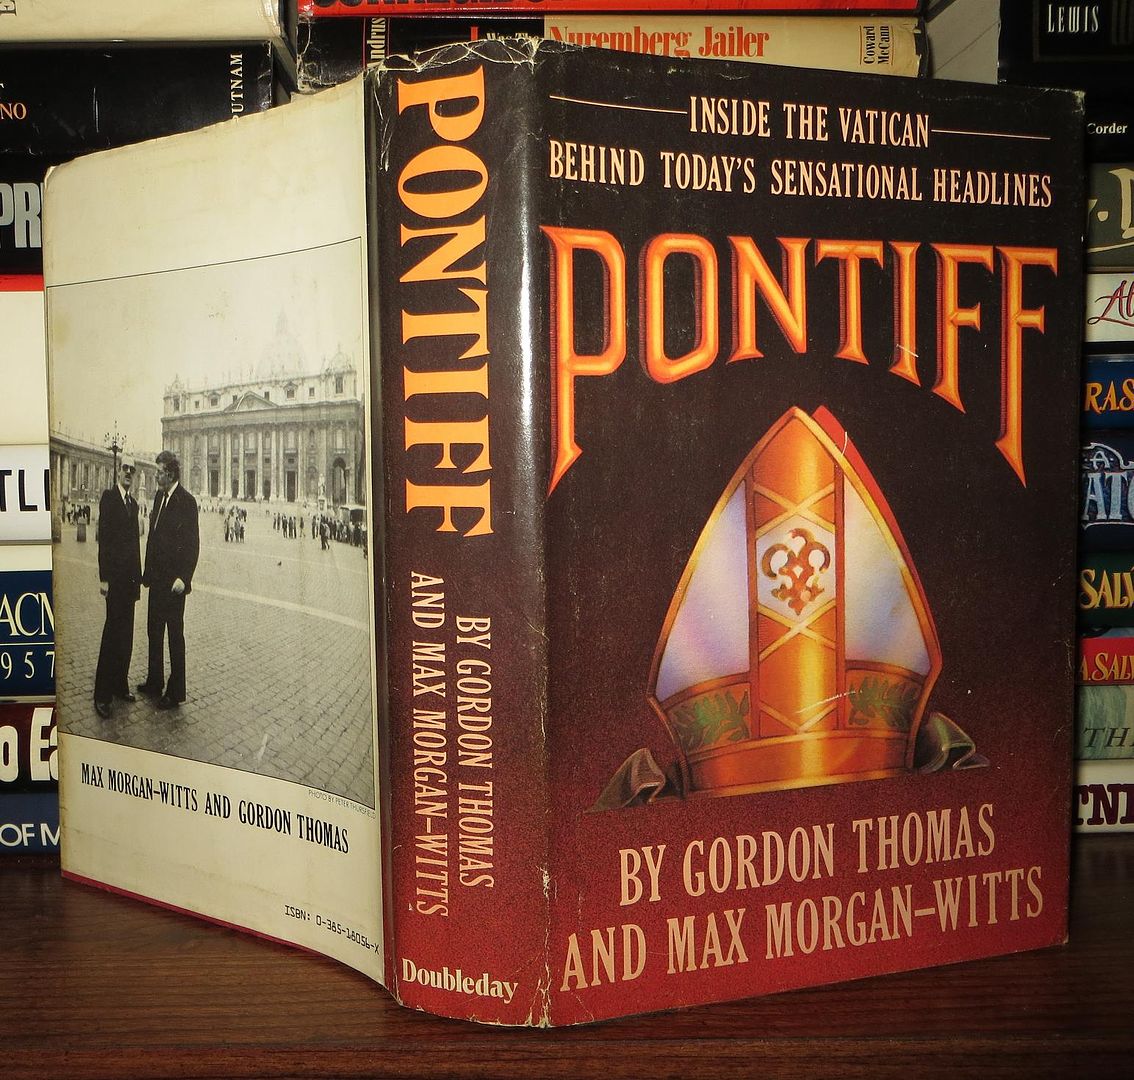 THOMAS, GORDON & MAX MORGAN-WITTS - Pontiff